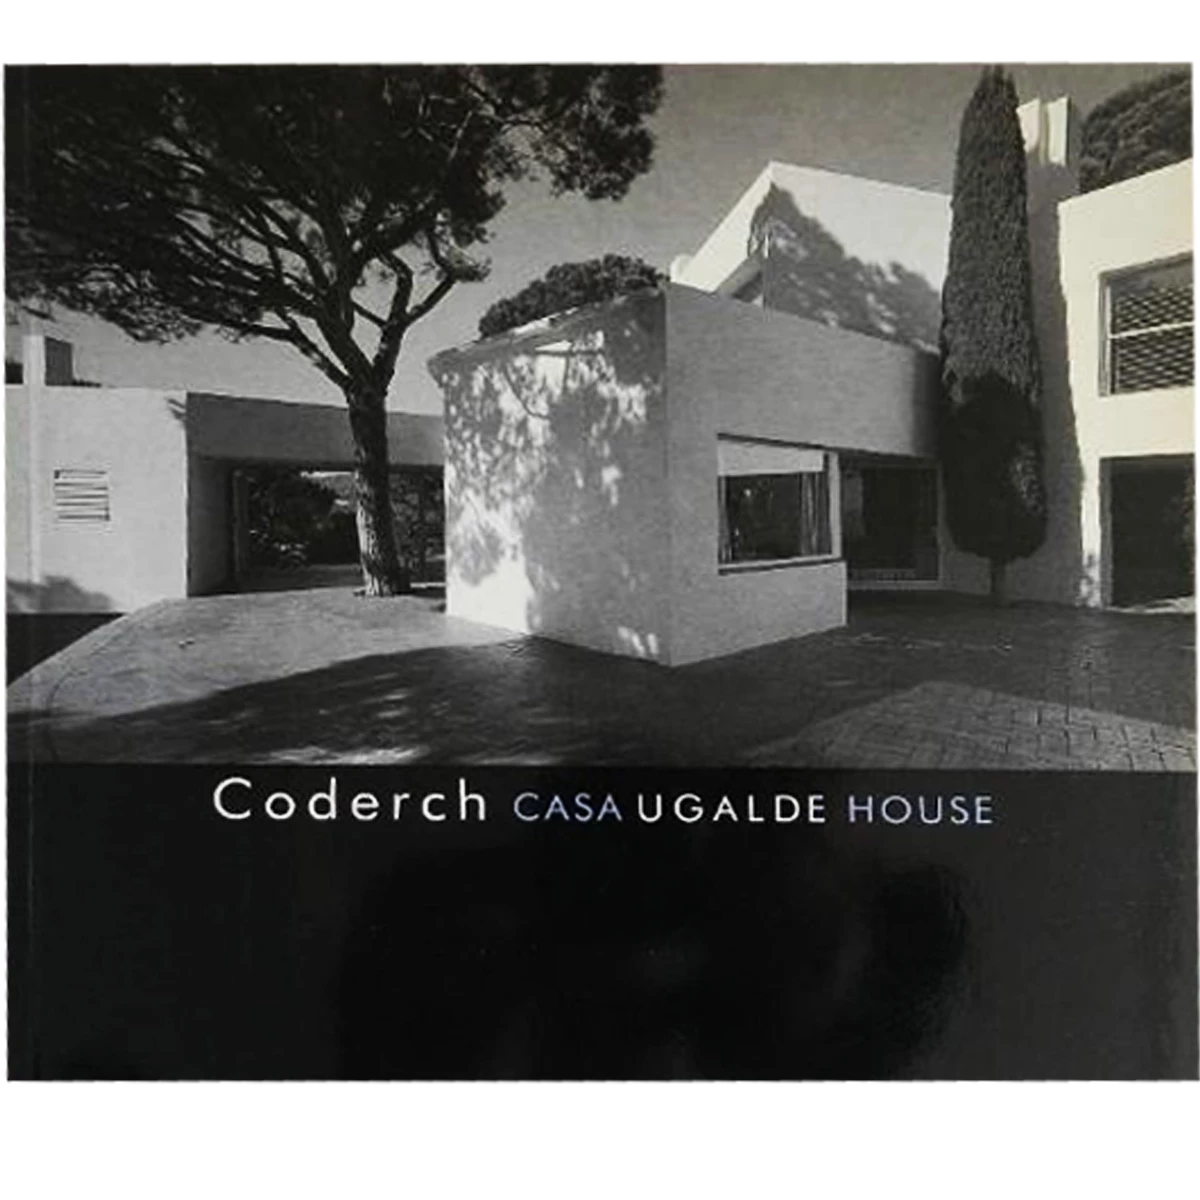 Coderch, Casa Ugalde